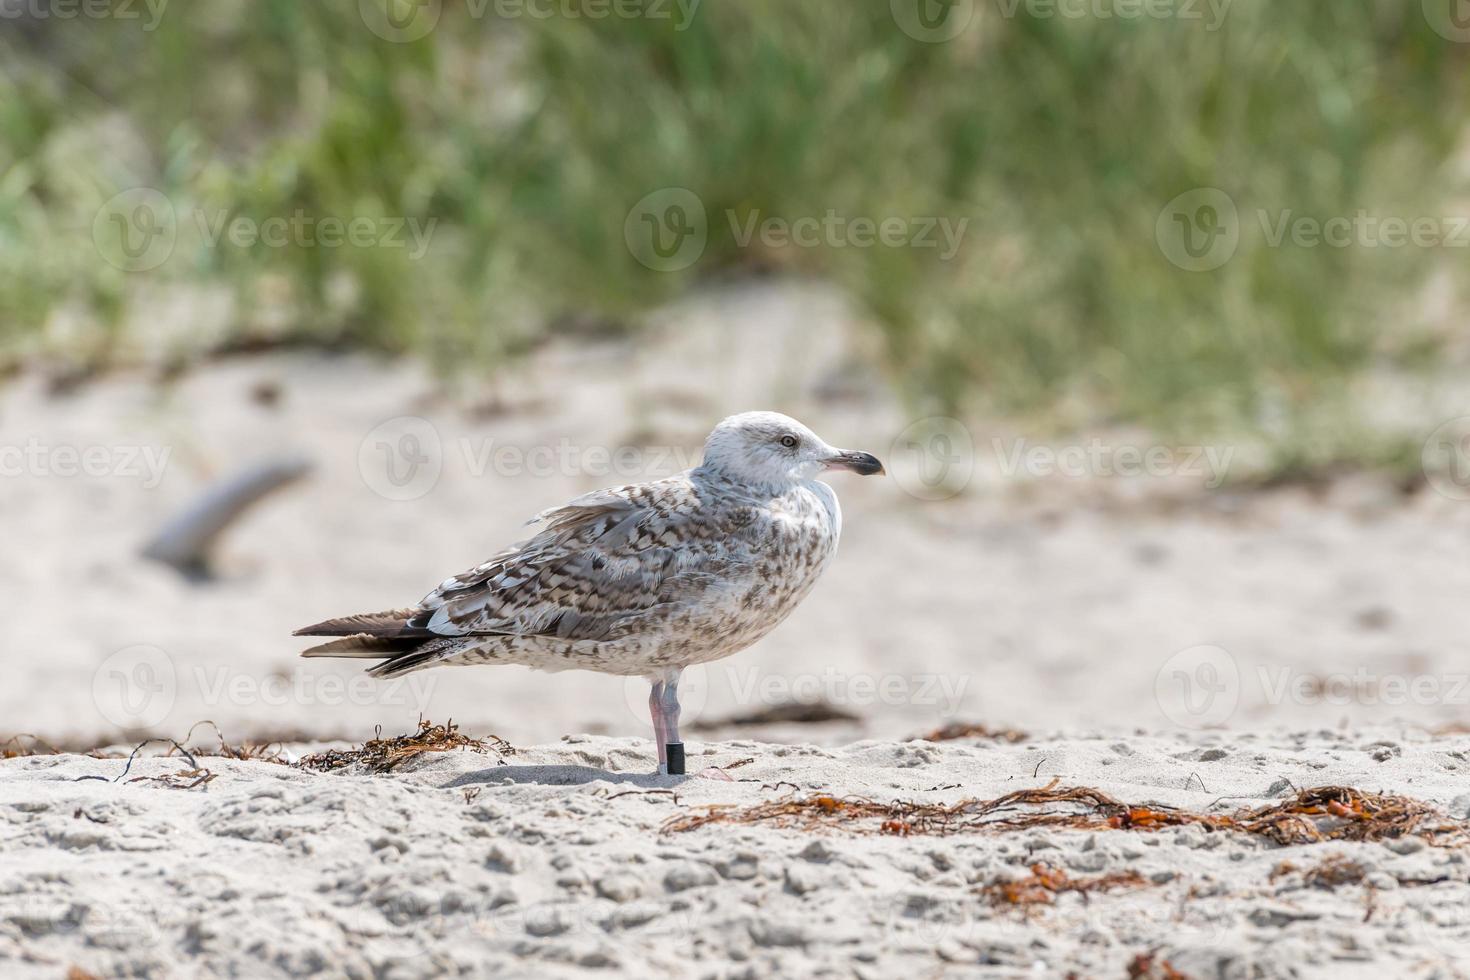 jovem gaivota anilhada na areia em frente a uma duna foto